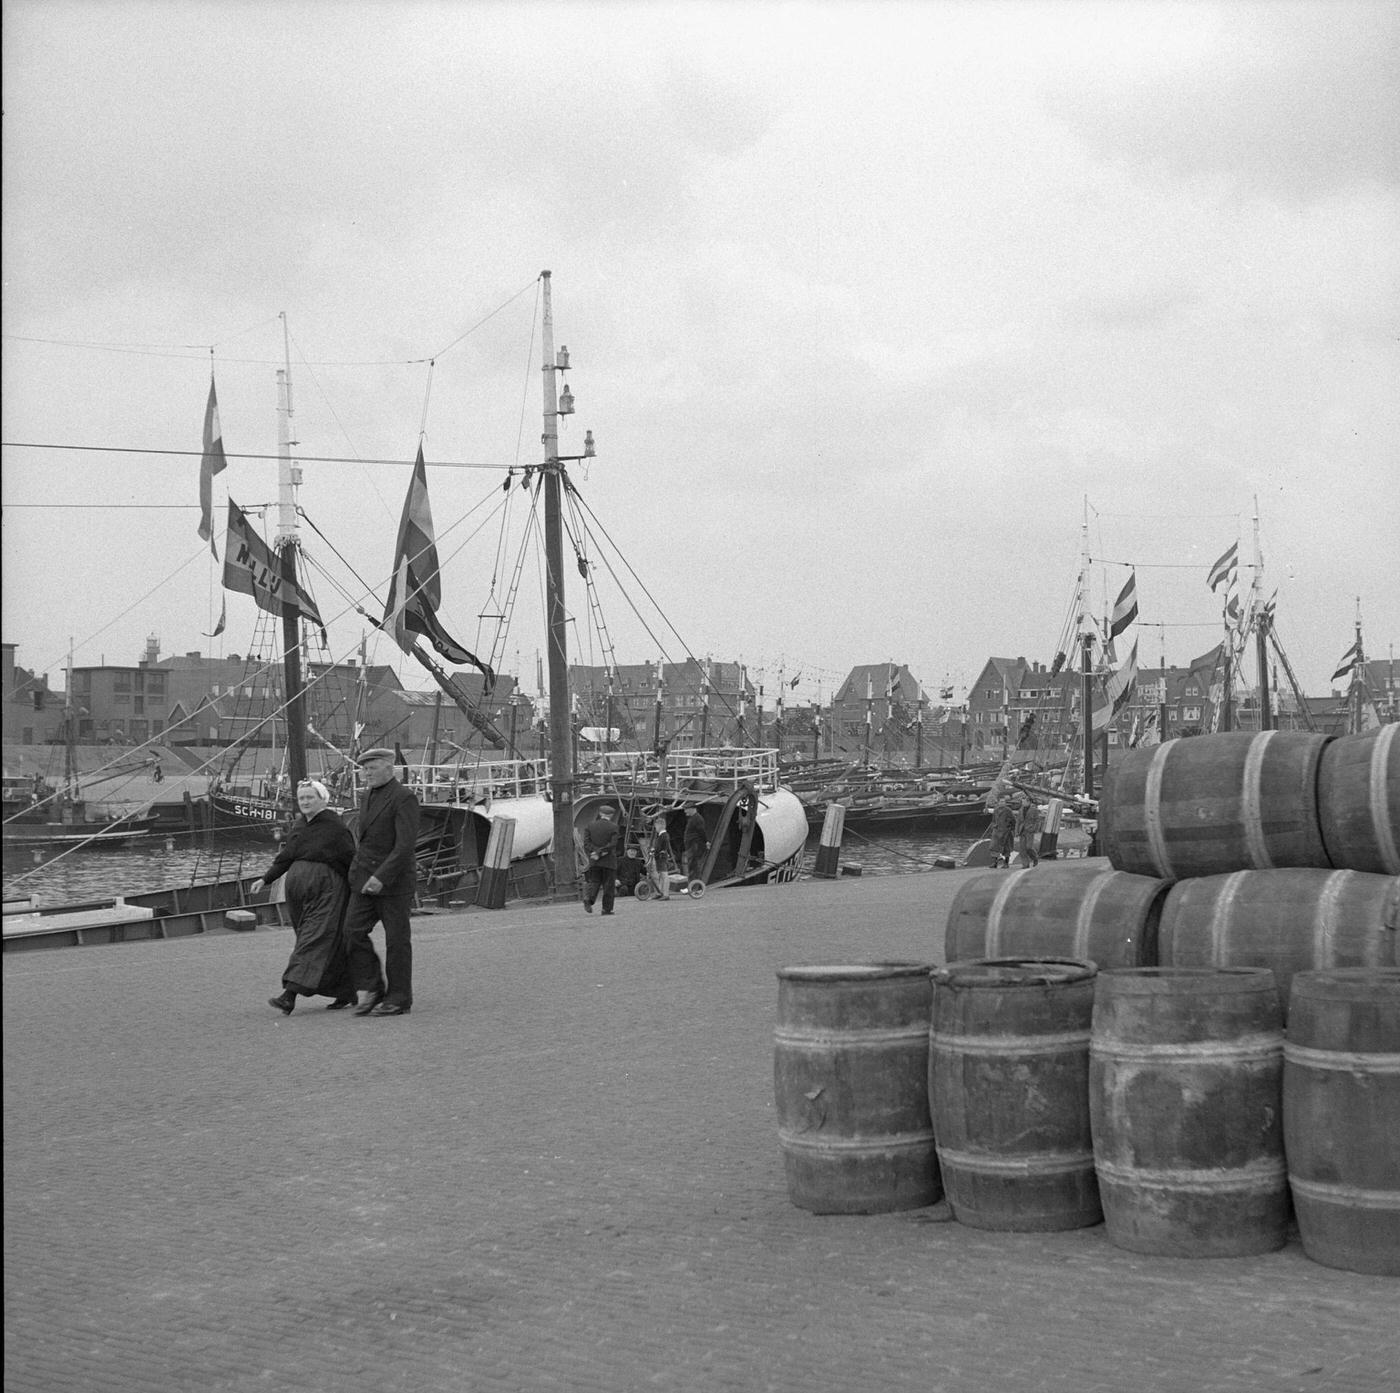 Fishing harbor of Scheveningen, the Netherlands, 1954.